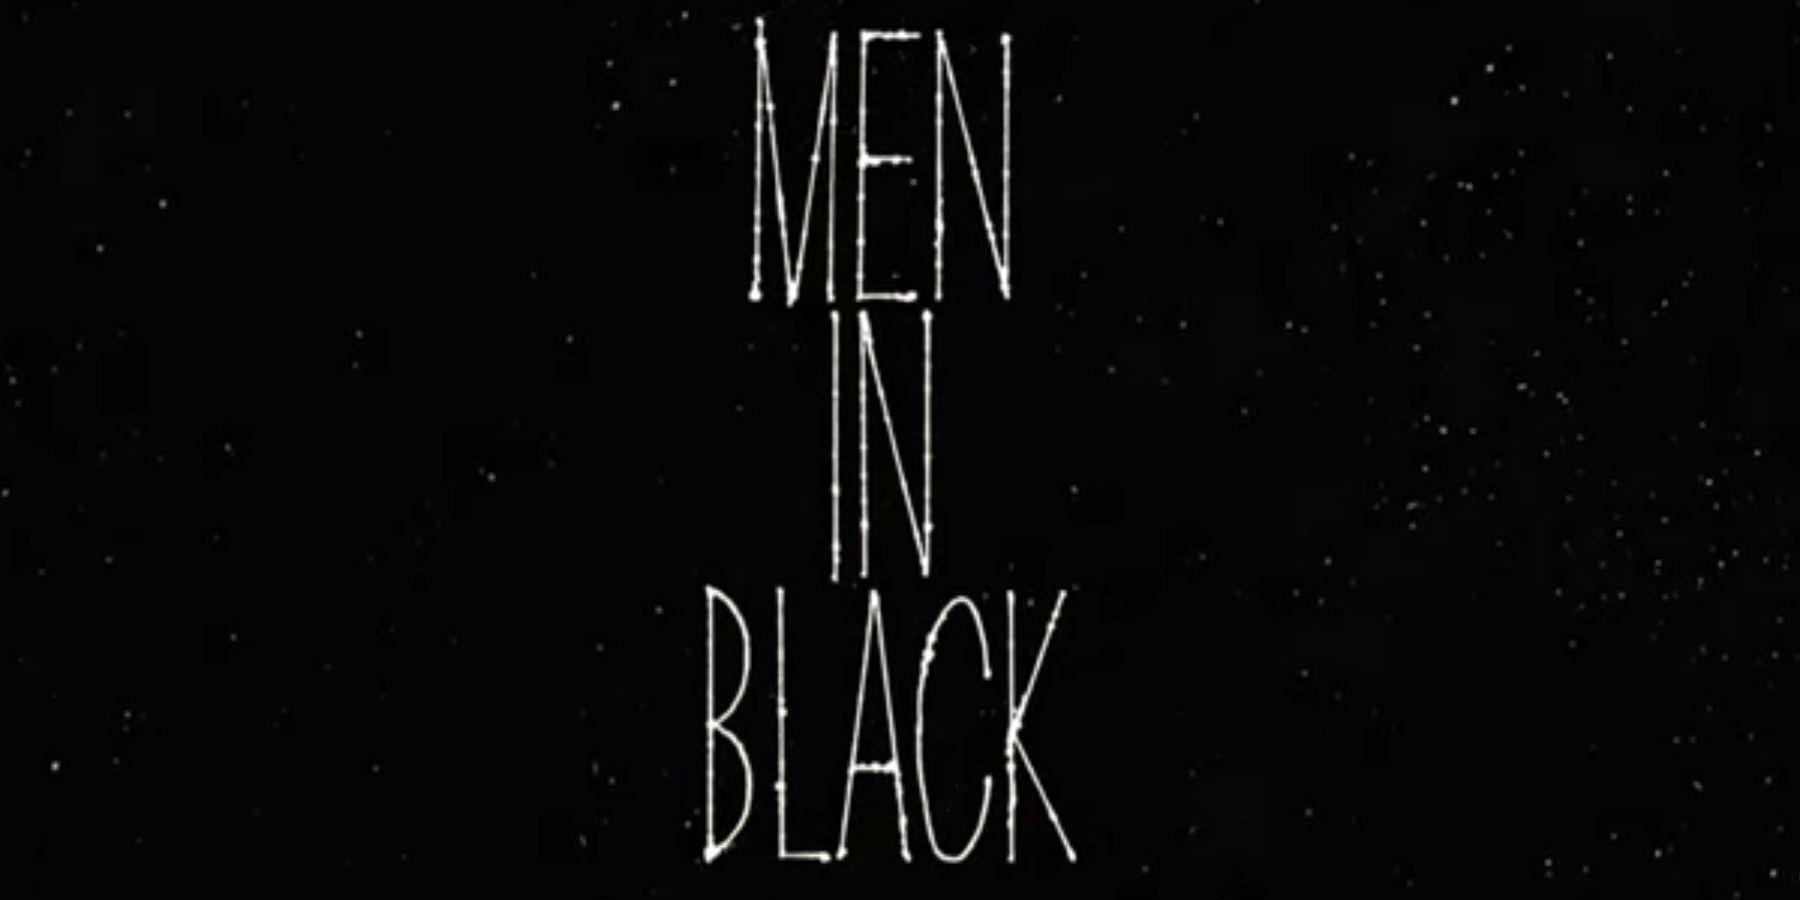 Men in Black opening titles